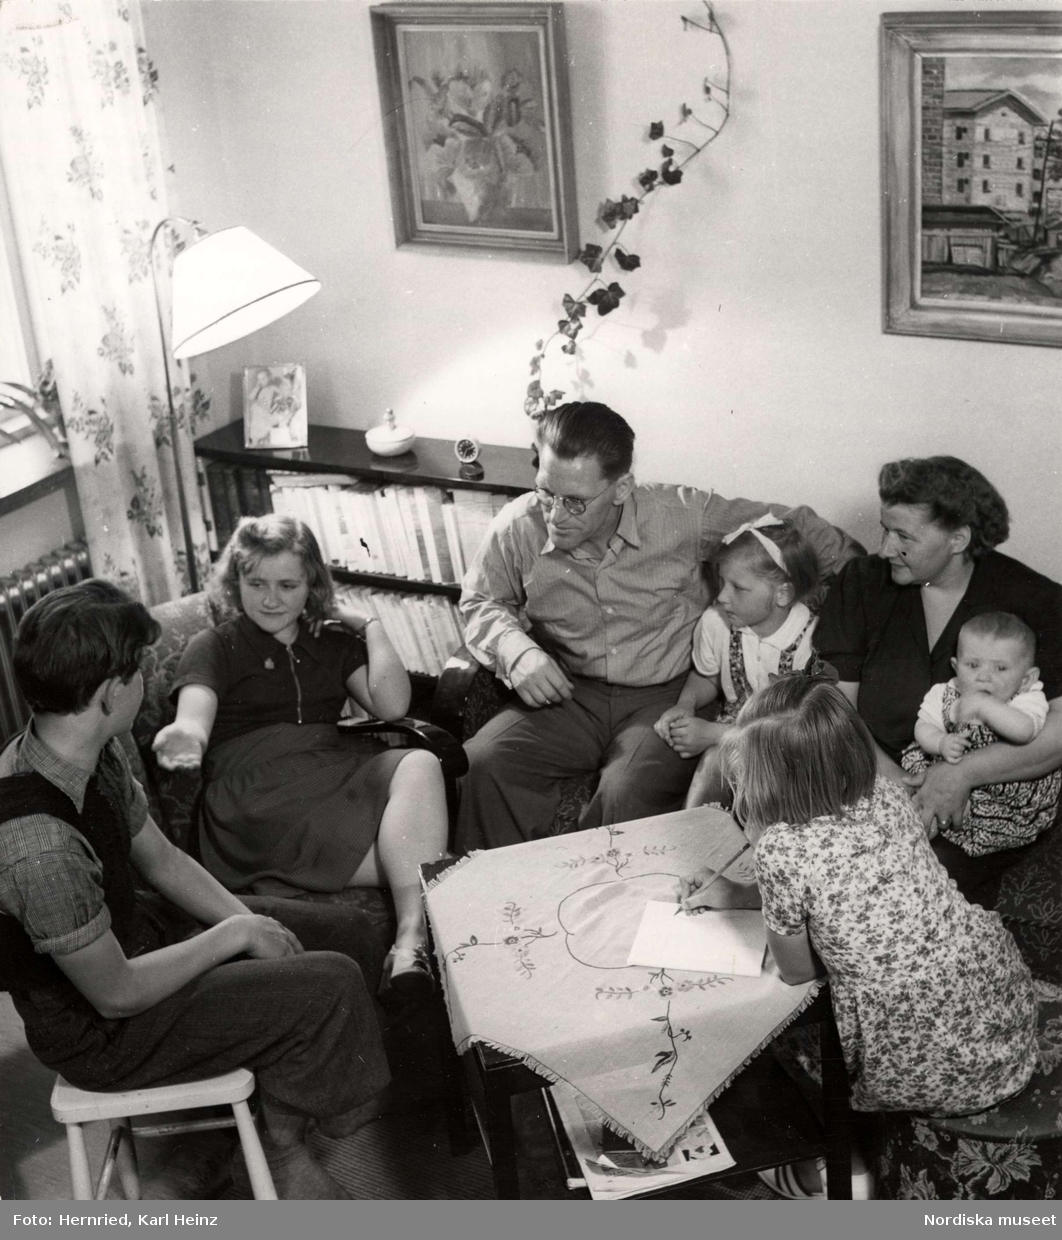 Familj sitter runt ett bord i vardagsrum och samtalar.